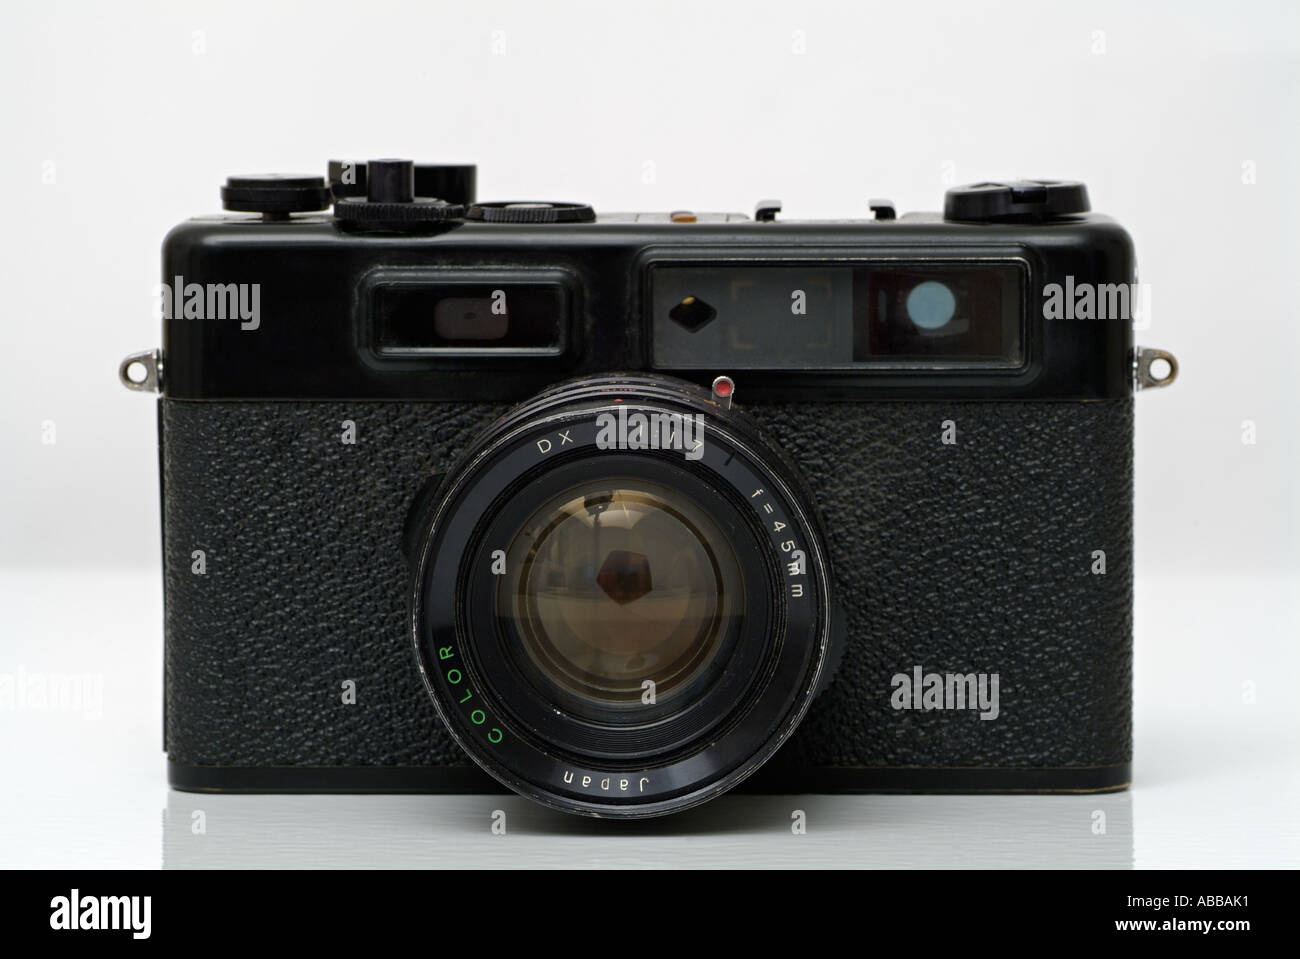 Fotocamera tradizionale di 35mm Rangefinder fotocamera contro uno sfondo bianco Foto Stock